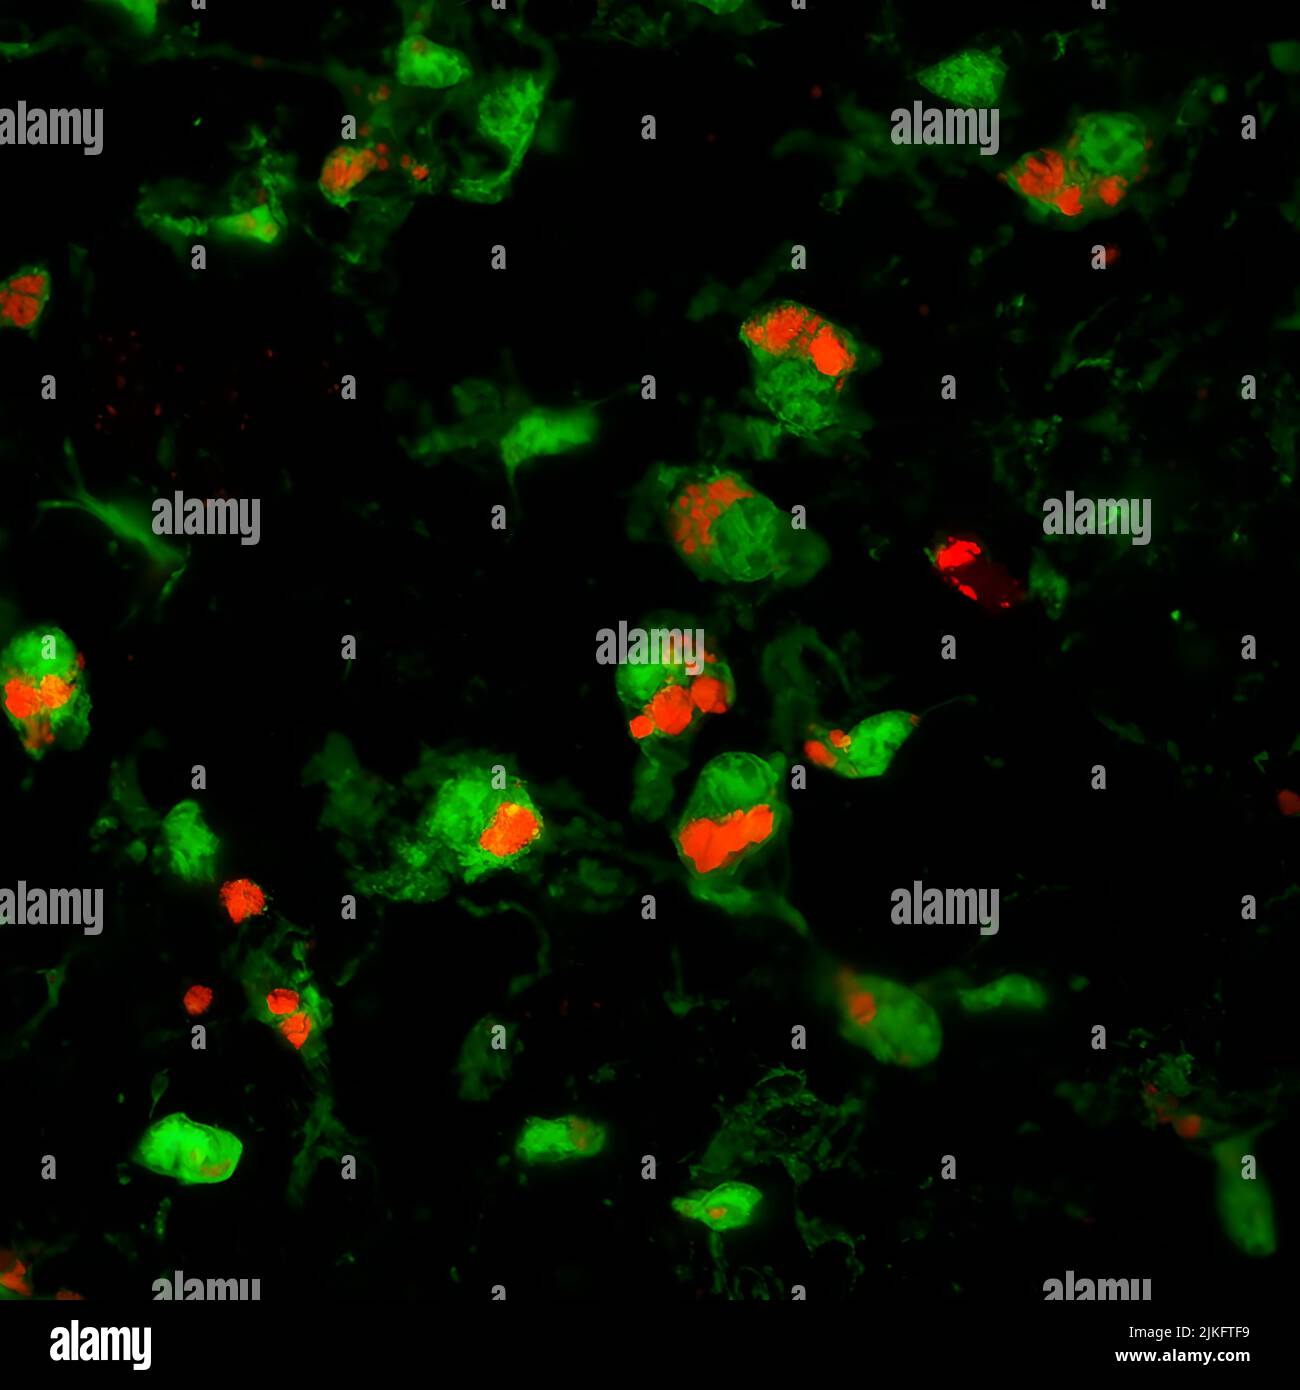 Mikroglia, eine Art Nervensystemzelle, die zuvor unter dem Verdacht steht, eine Schädigung der Netzhaut zu verursachen, hat sich als vorteilhaft erwiesen, um das Fortschreiten der Prionerkrankung im Gehirn und jetzt in der Netzhaut zu verlangsamen. In diesem Bild verschlingen und entfernen Mikrogliazellen (grün) priongeschädigte Photorezeptoren (rot), die die Netzhautdegeneration zu verlangsamen scheinen. Stockfoto